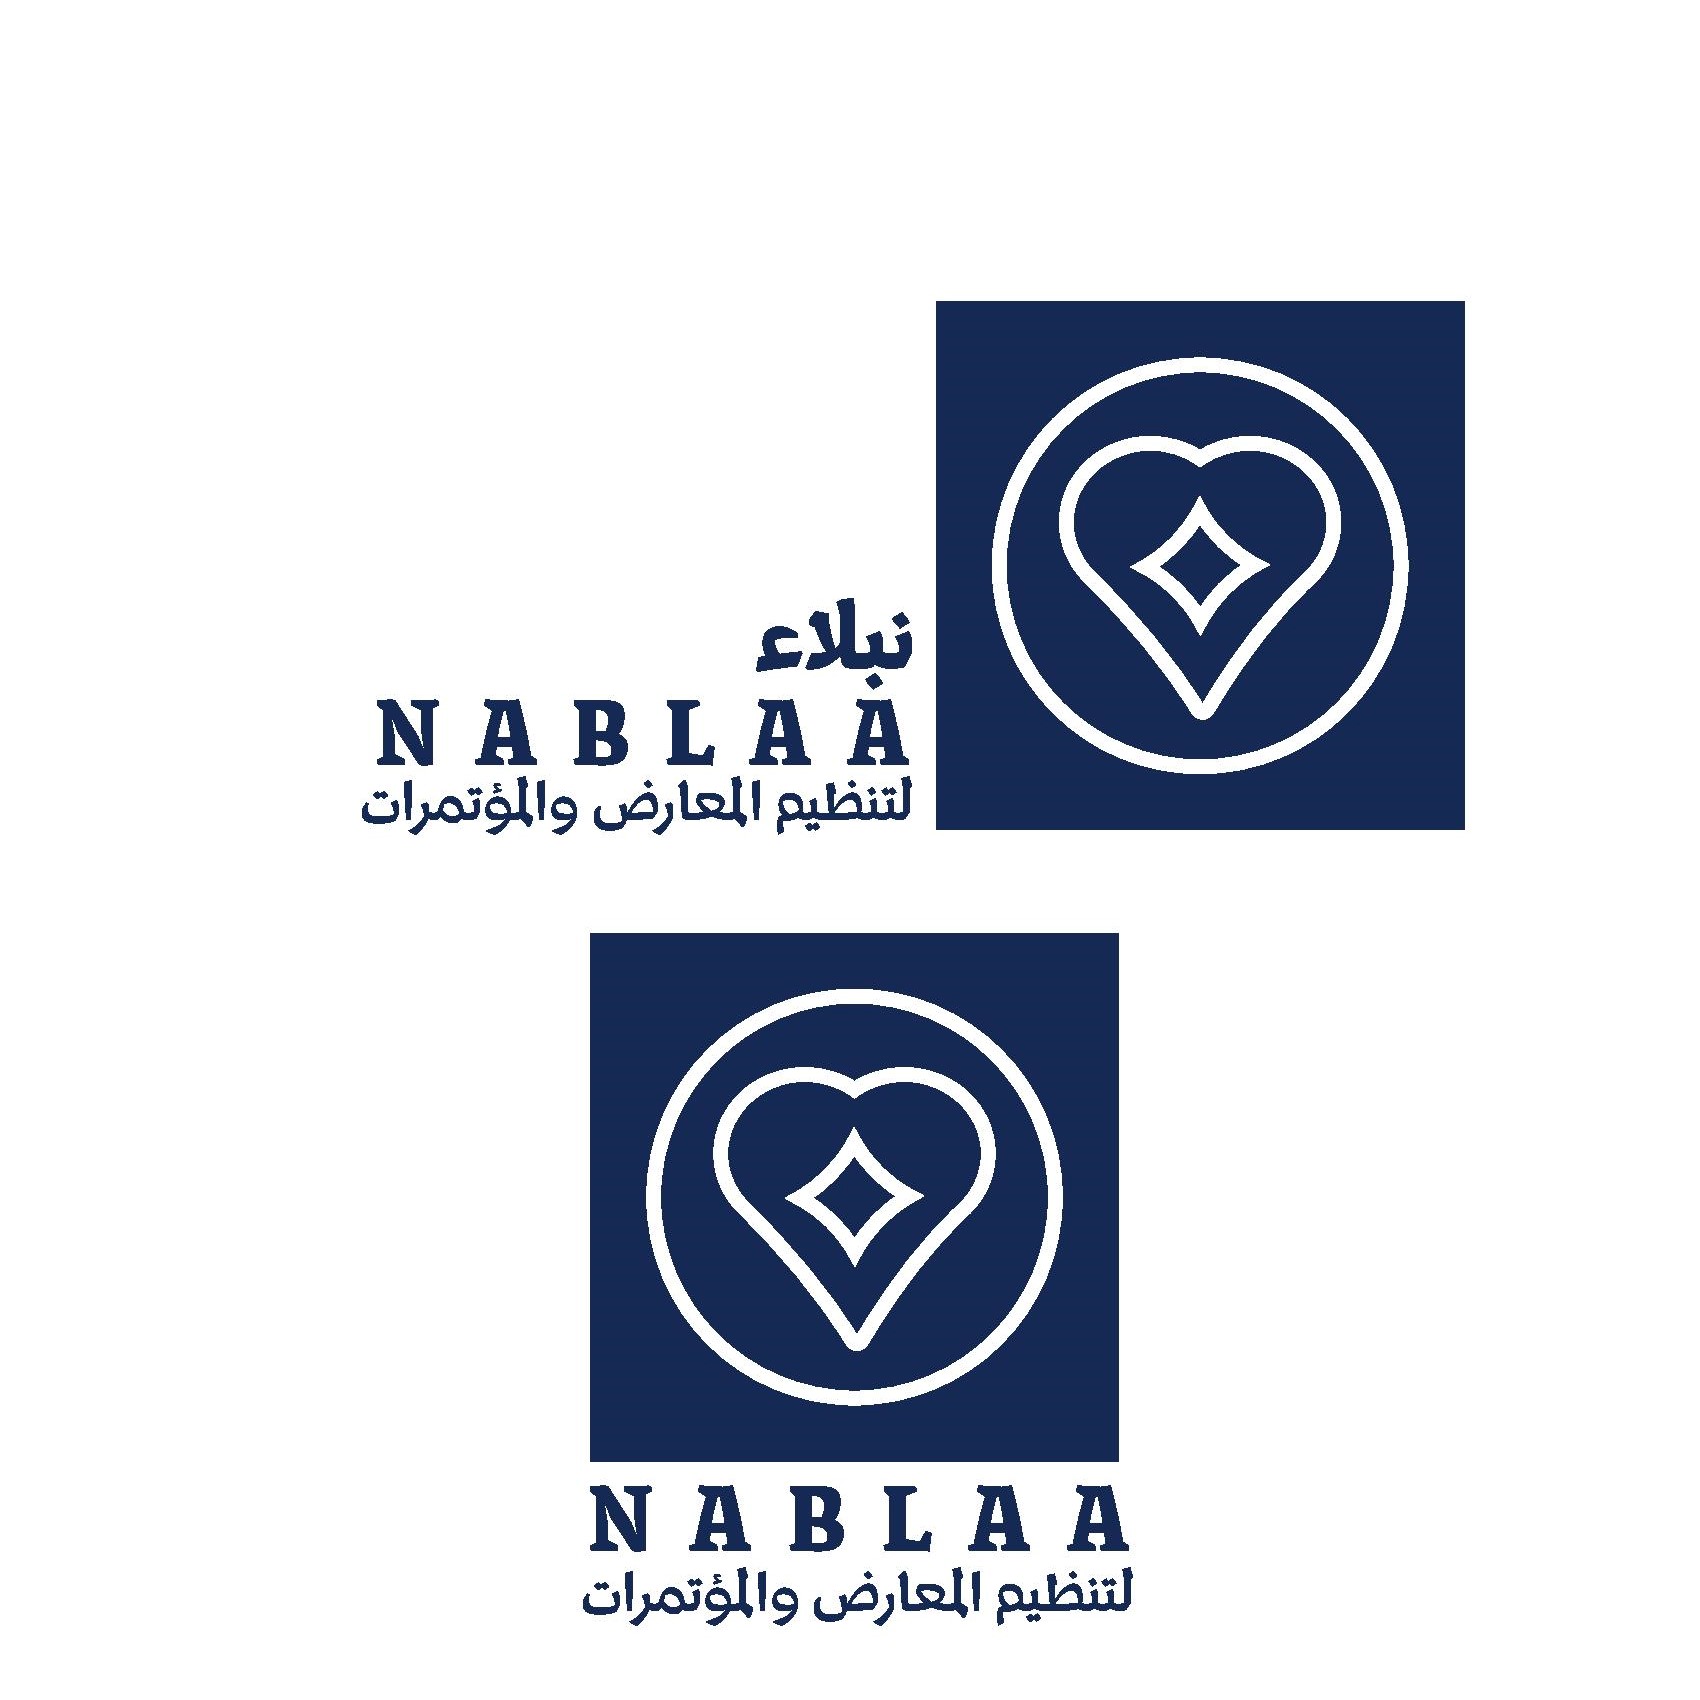 Nablaa Organization 